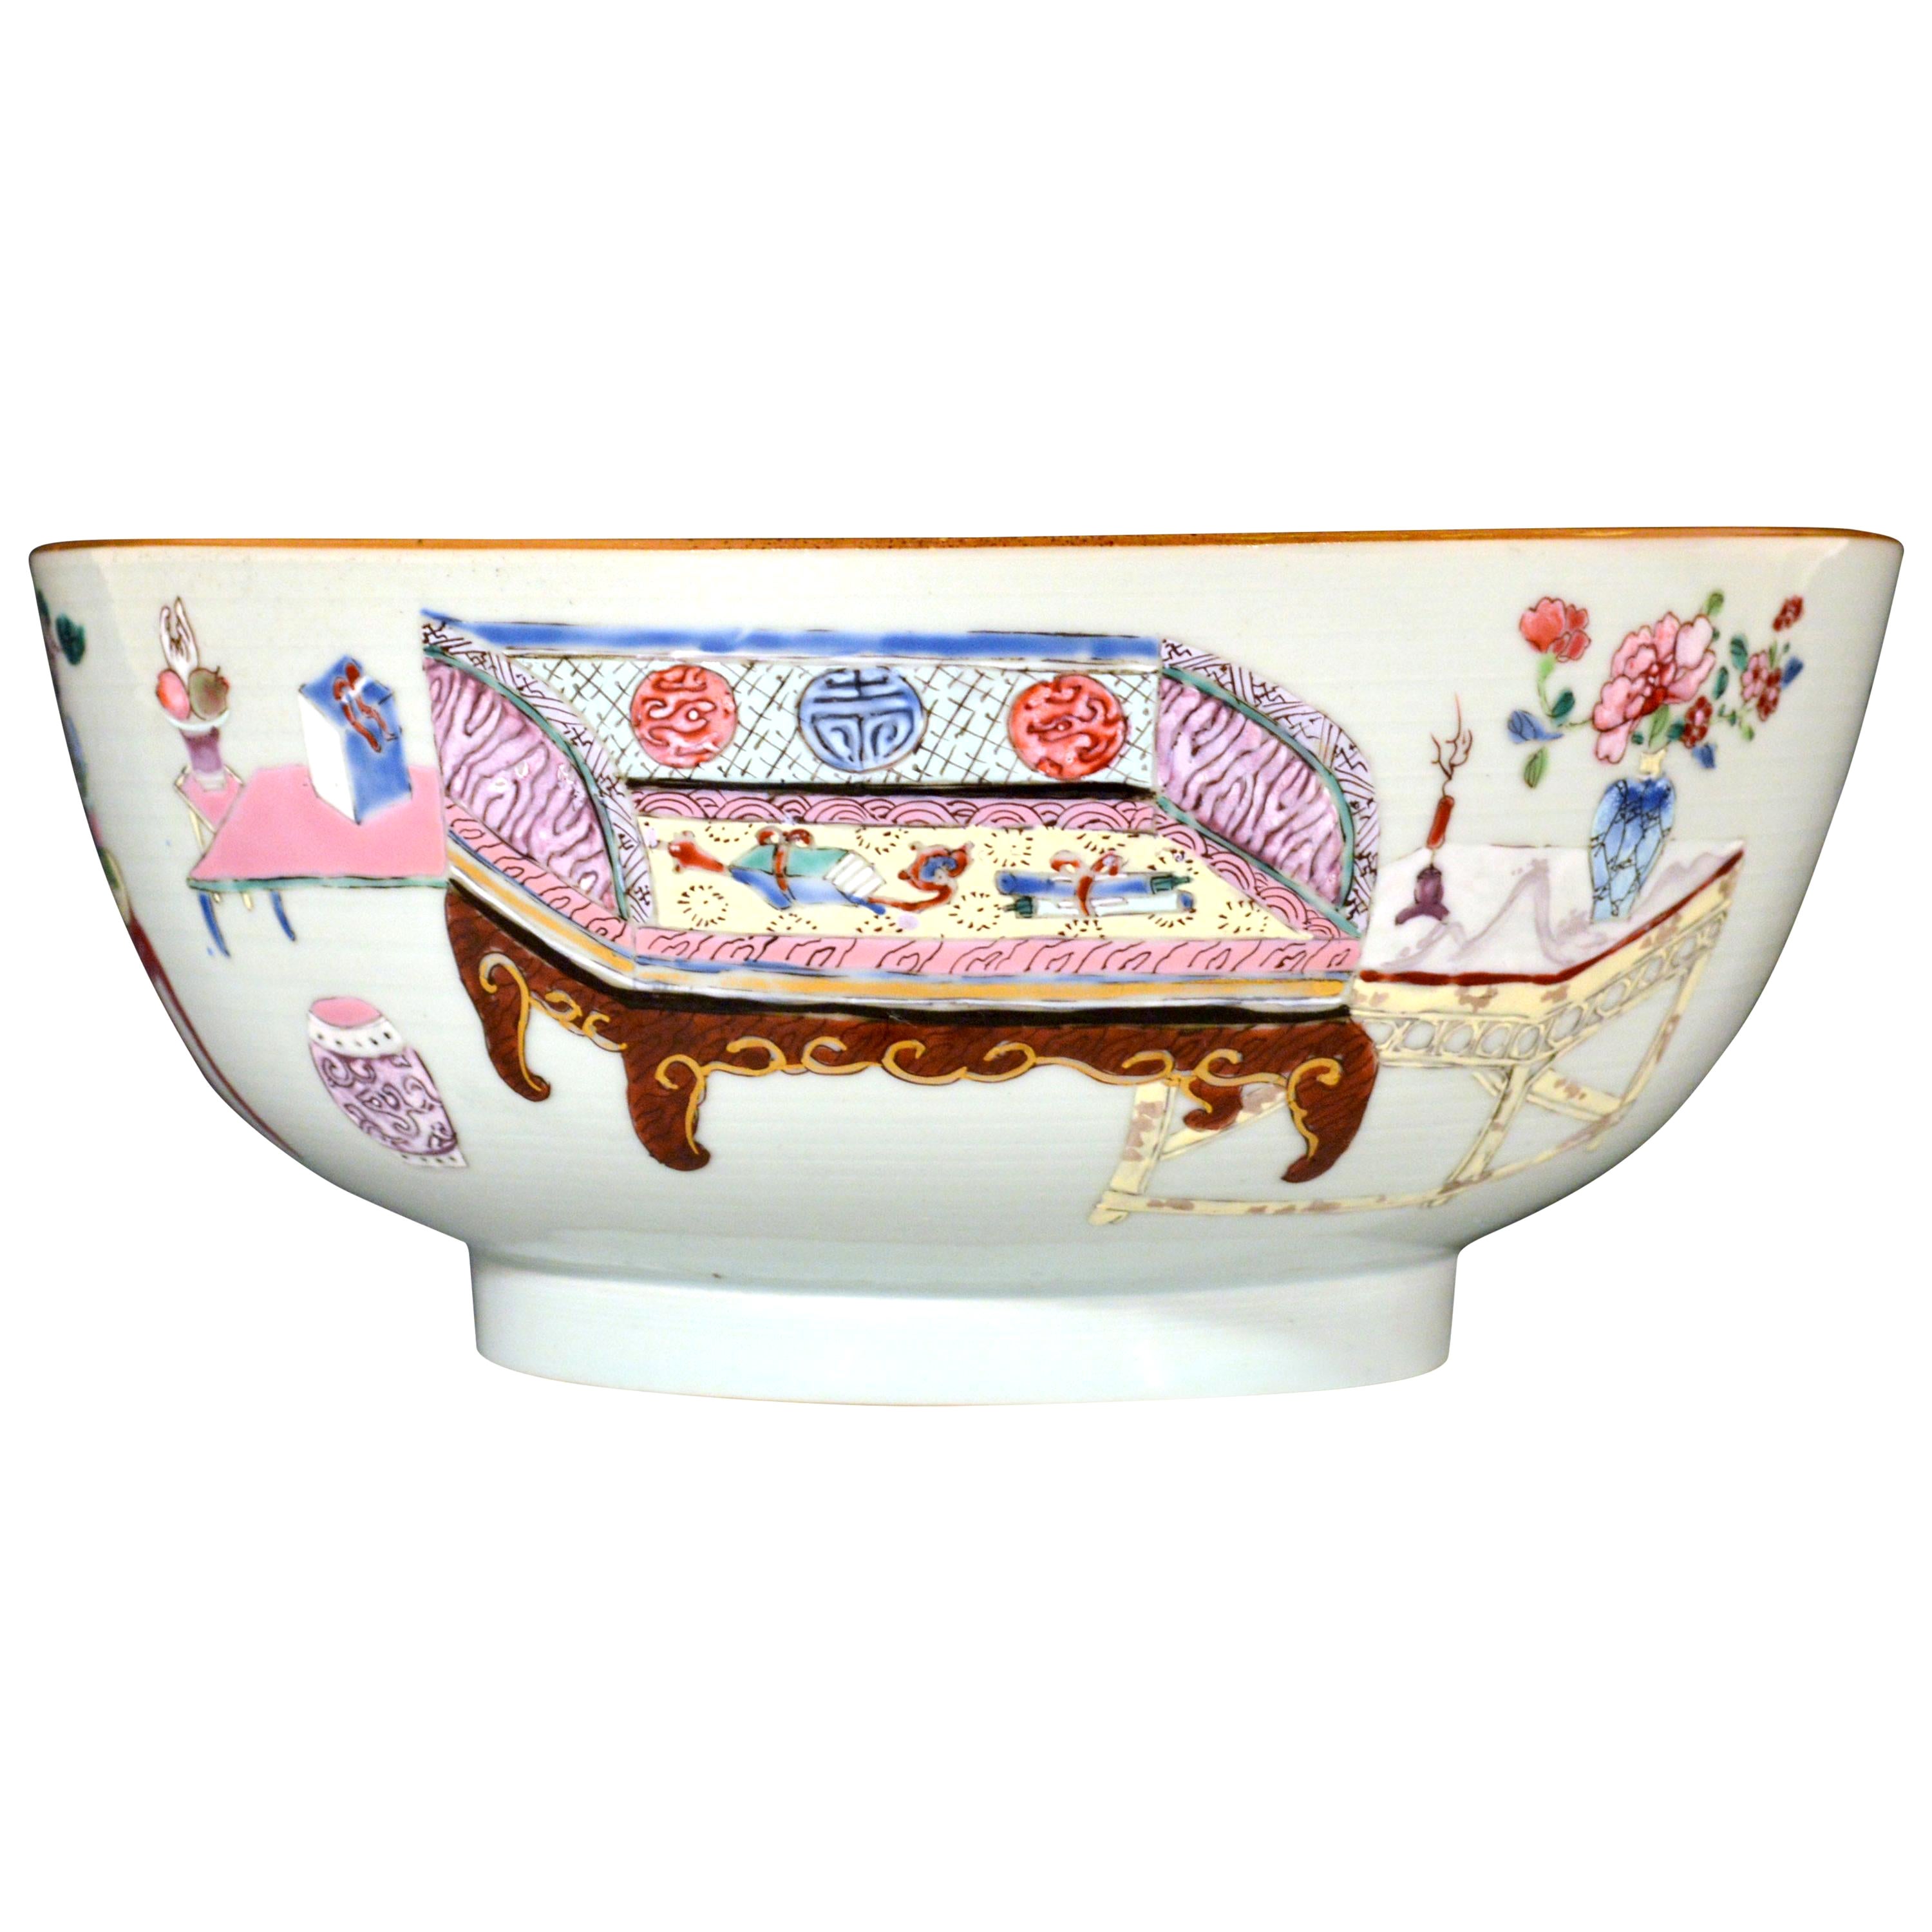 Bol en porcelaine d'exportation chinoise du 18e siècle avec meubles domestiques chinois